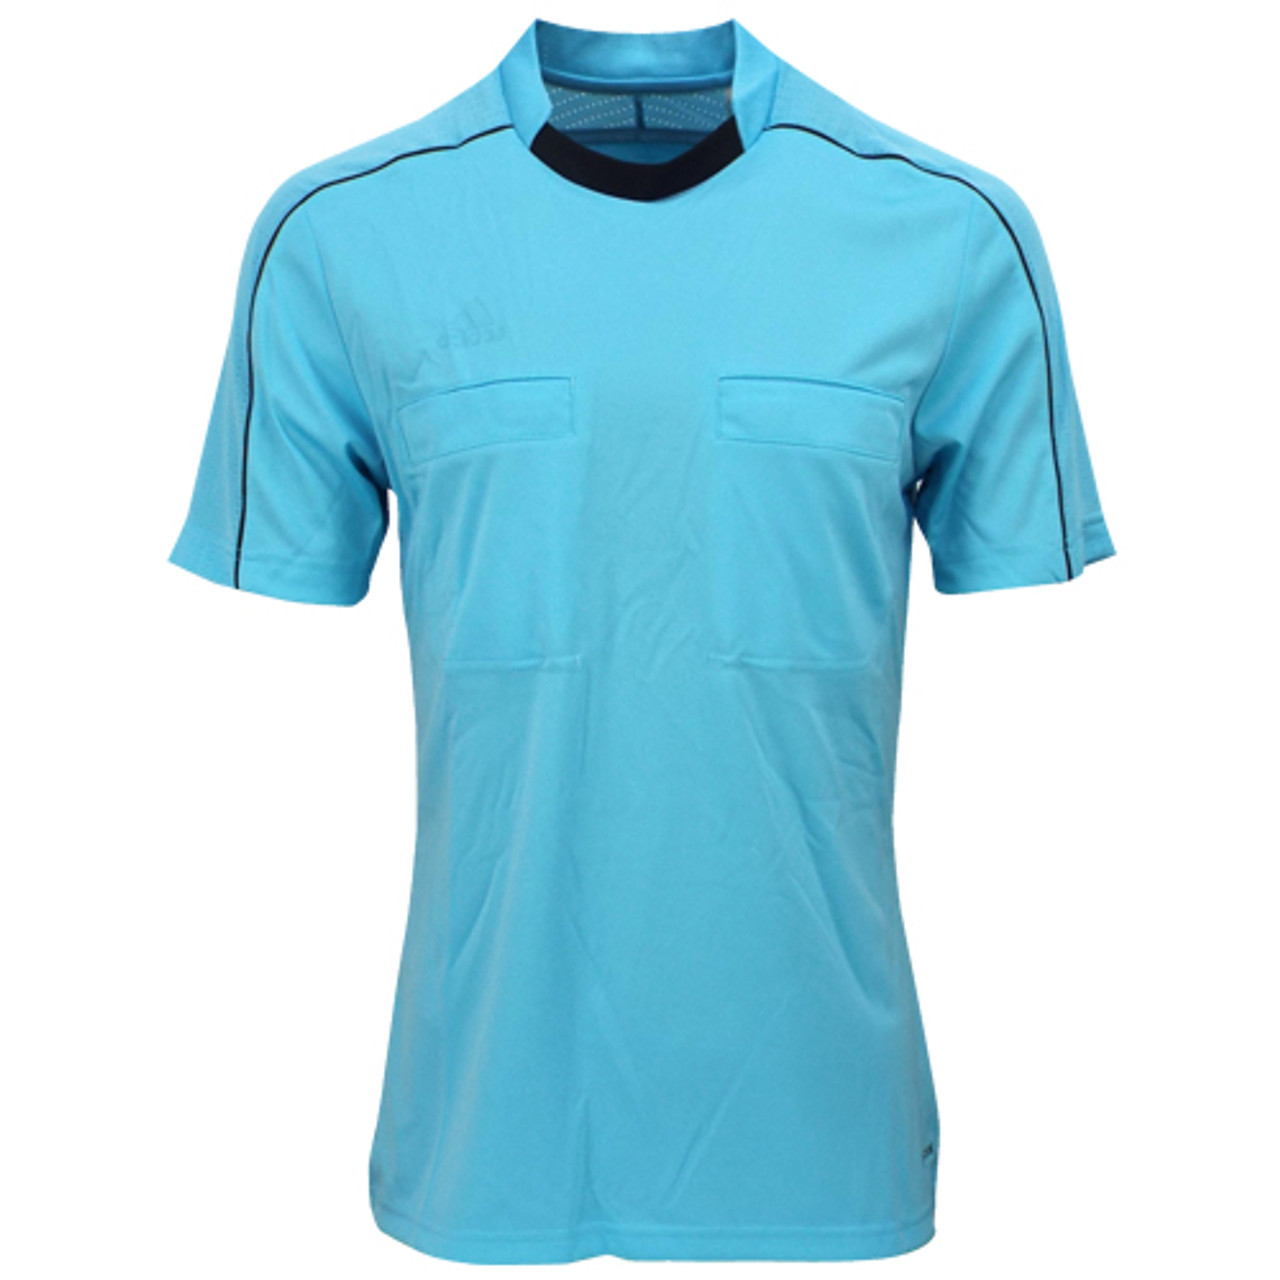 Encogimiento De todos modos Fábula 2016 Adidas Referee Jersey Short Sleeve (Blue Glow)